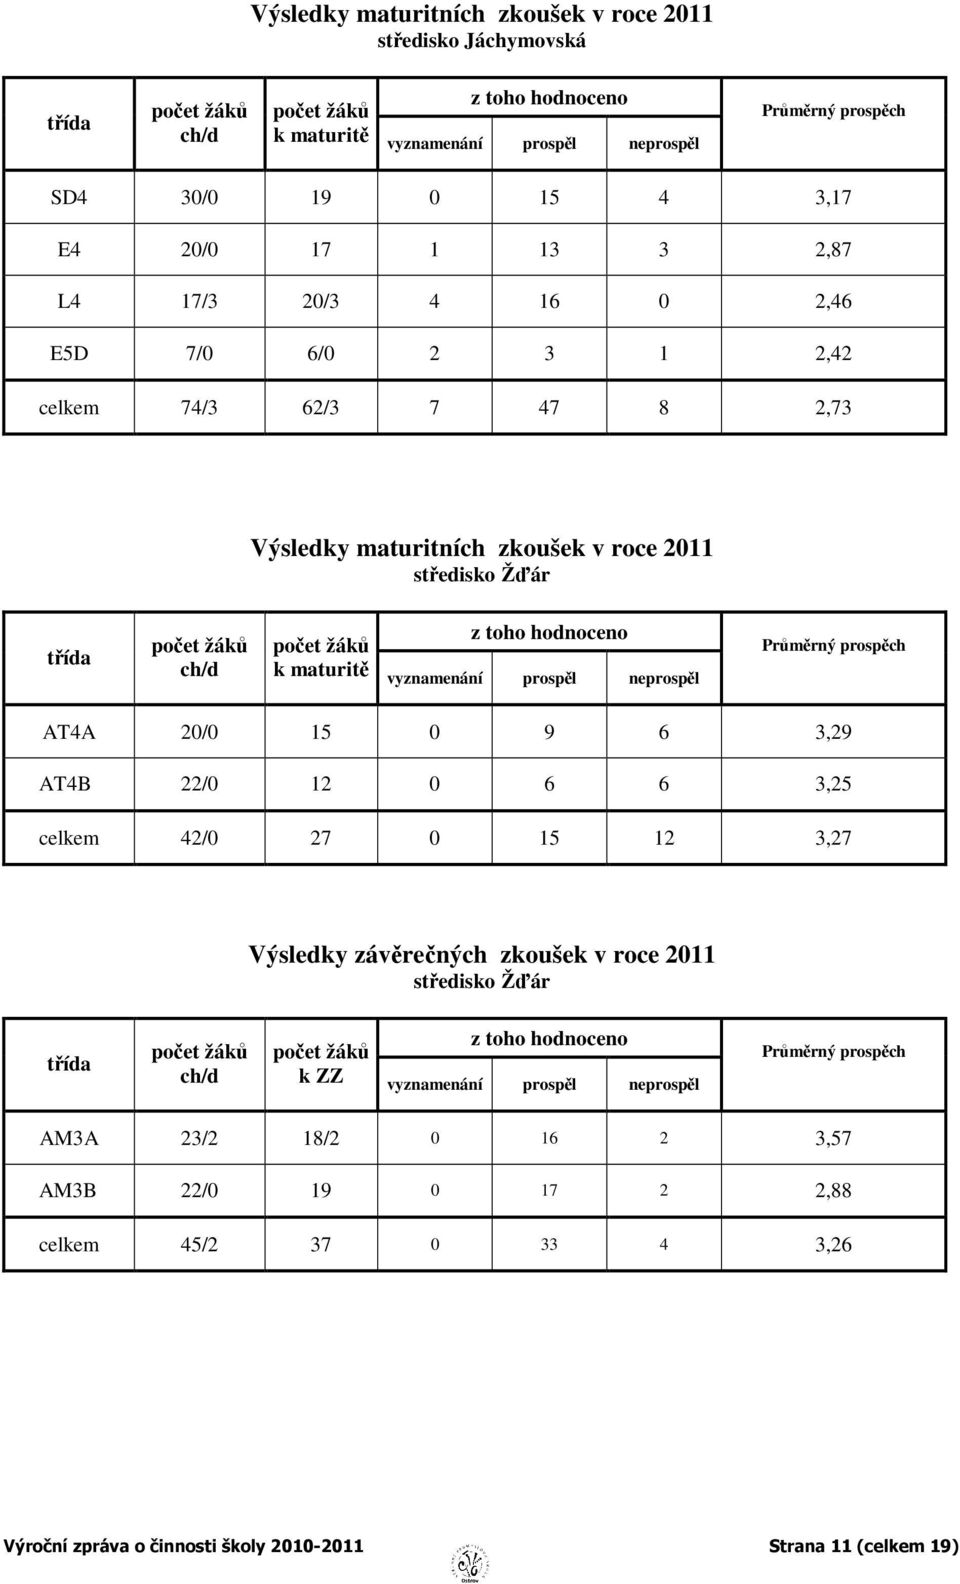 žáků k maturitě vyznamenání prospěl neprospěl Průměrný prospěch AT4A 20/0 15 0 9 6 3,29 AT4B 22/0 12 0 6 6 3,25 celkem 42/0 27 0 15 12 3,27 Výsledky závěrečných zkoušek v roce 2011 středisko Žďár